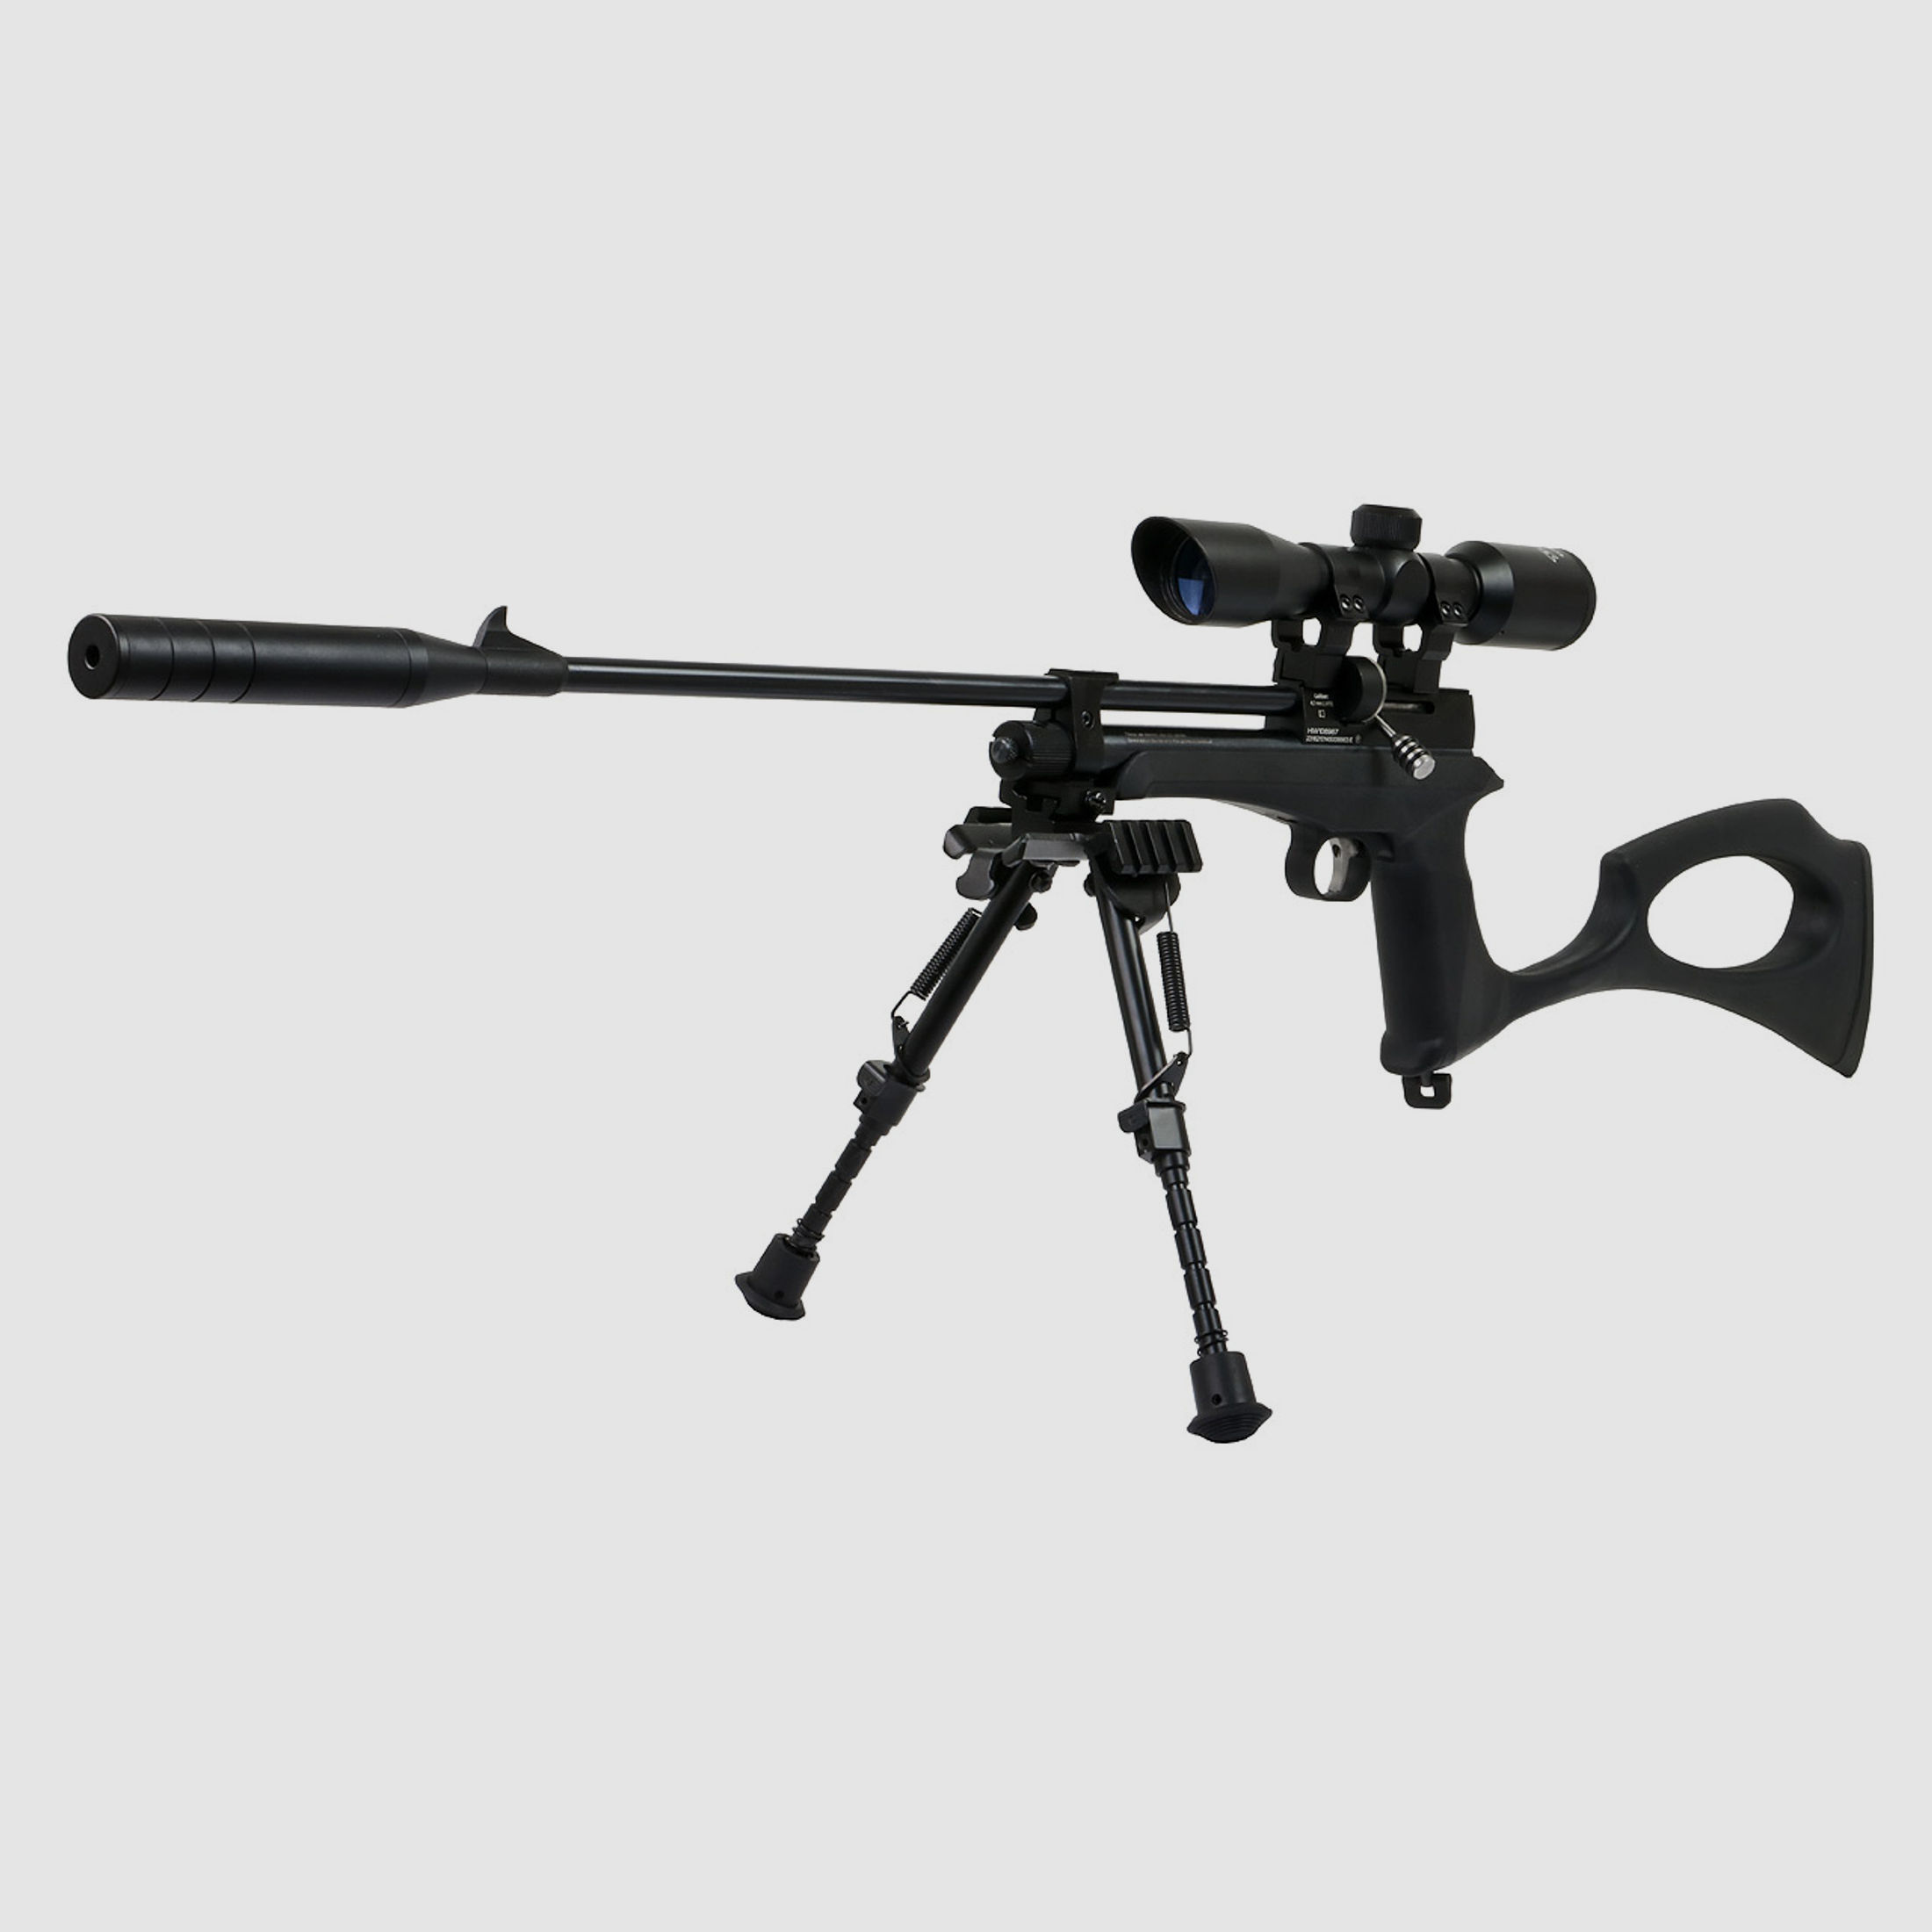 CO2 Pistole und Gewehr Diana Chaser Rifle Bipod Set SchalldĂ¤mpfer Zielfernrohr 4x32 Zweibein 9 Schuss Trommelmagazin Kaliber 4,5 mm (P18)